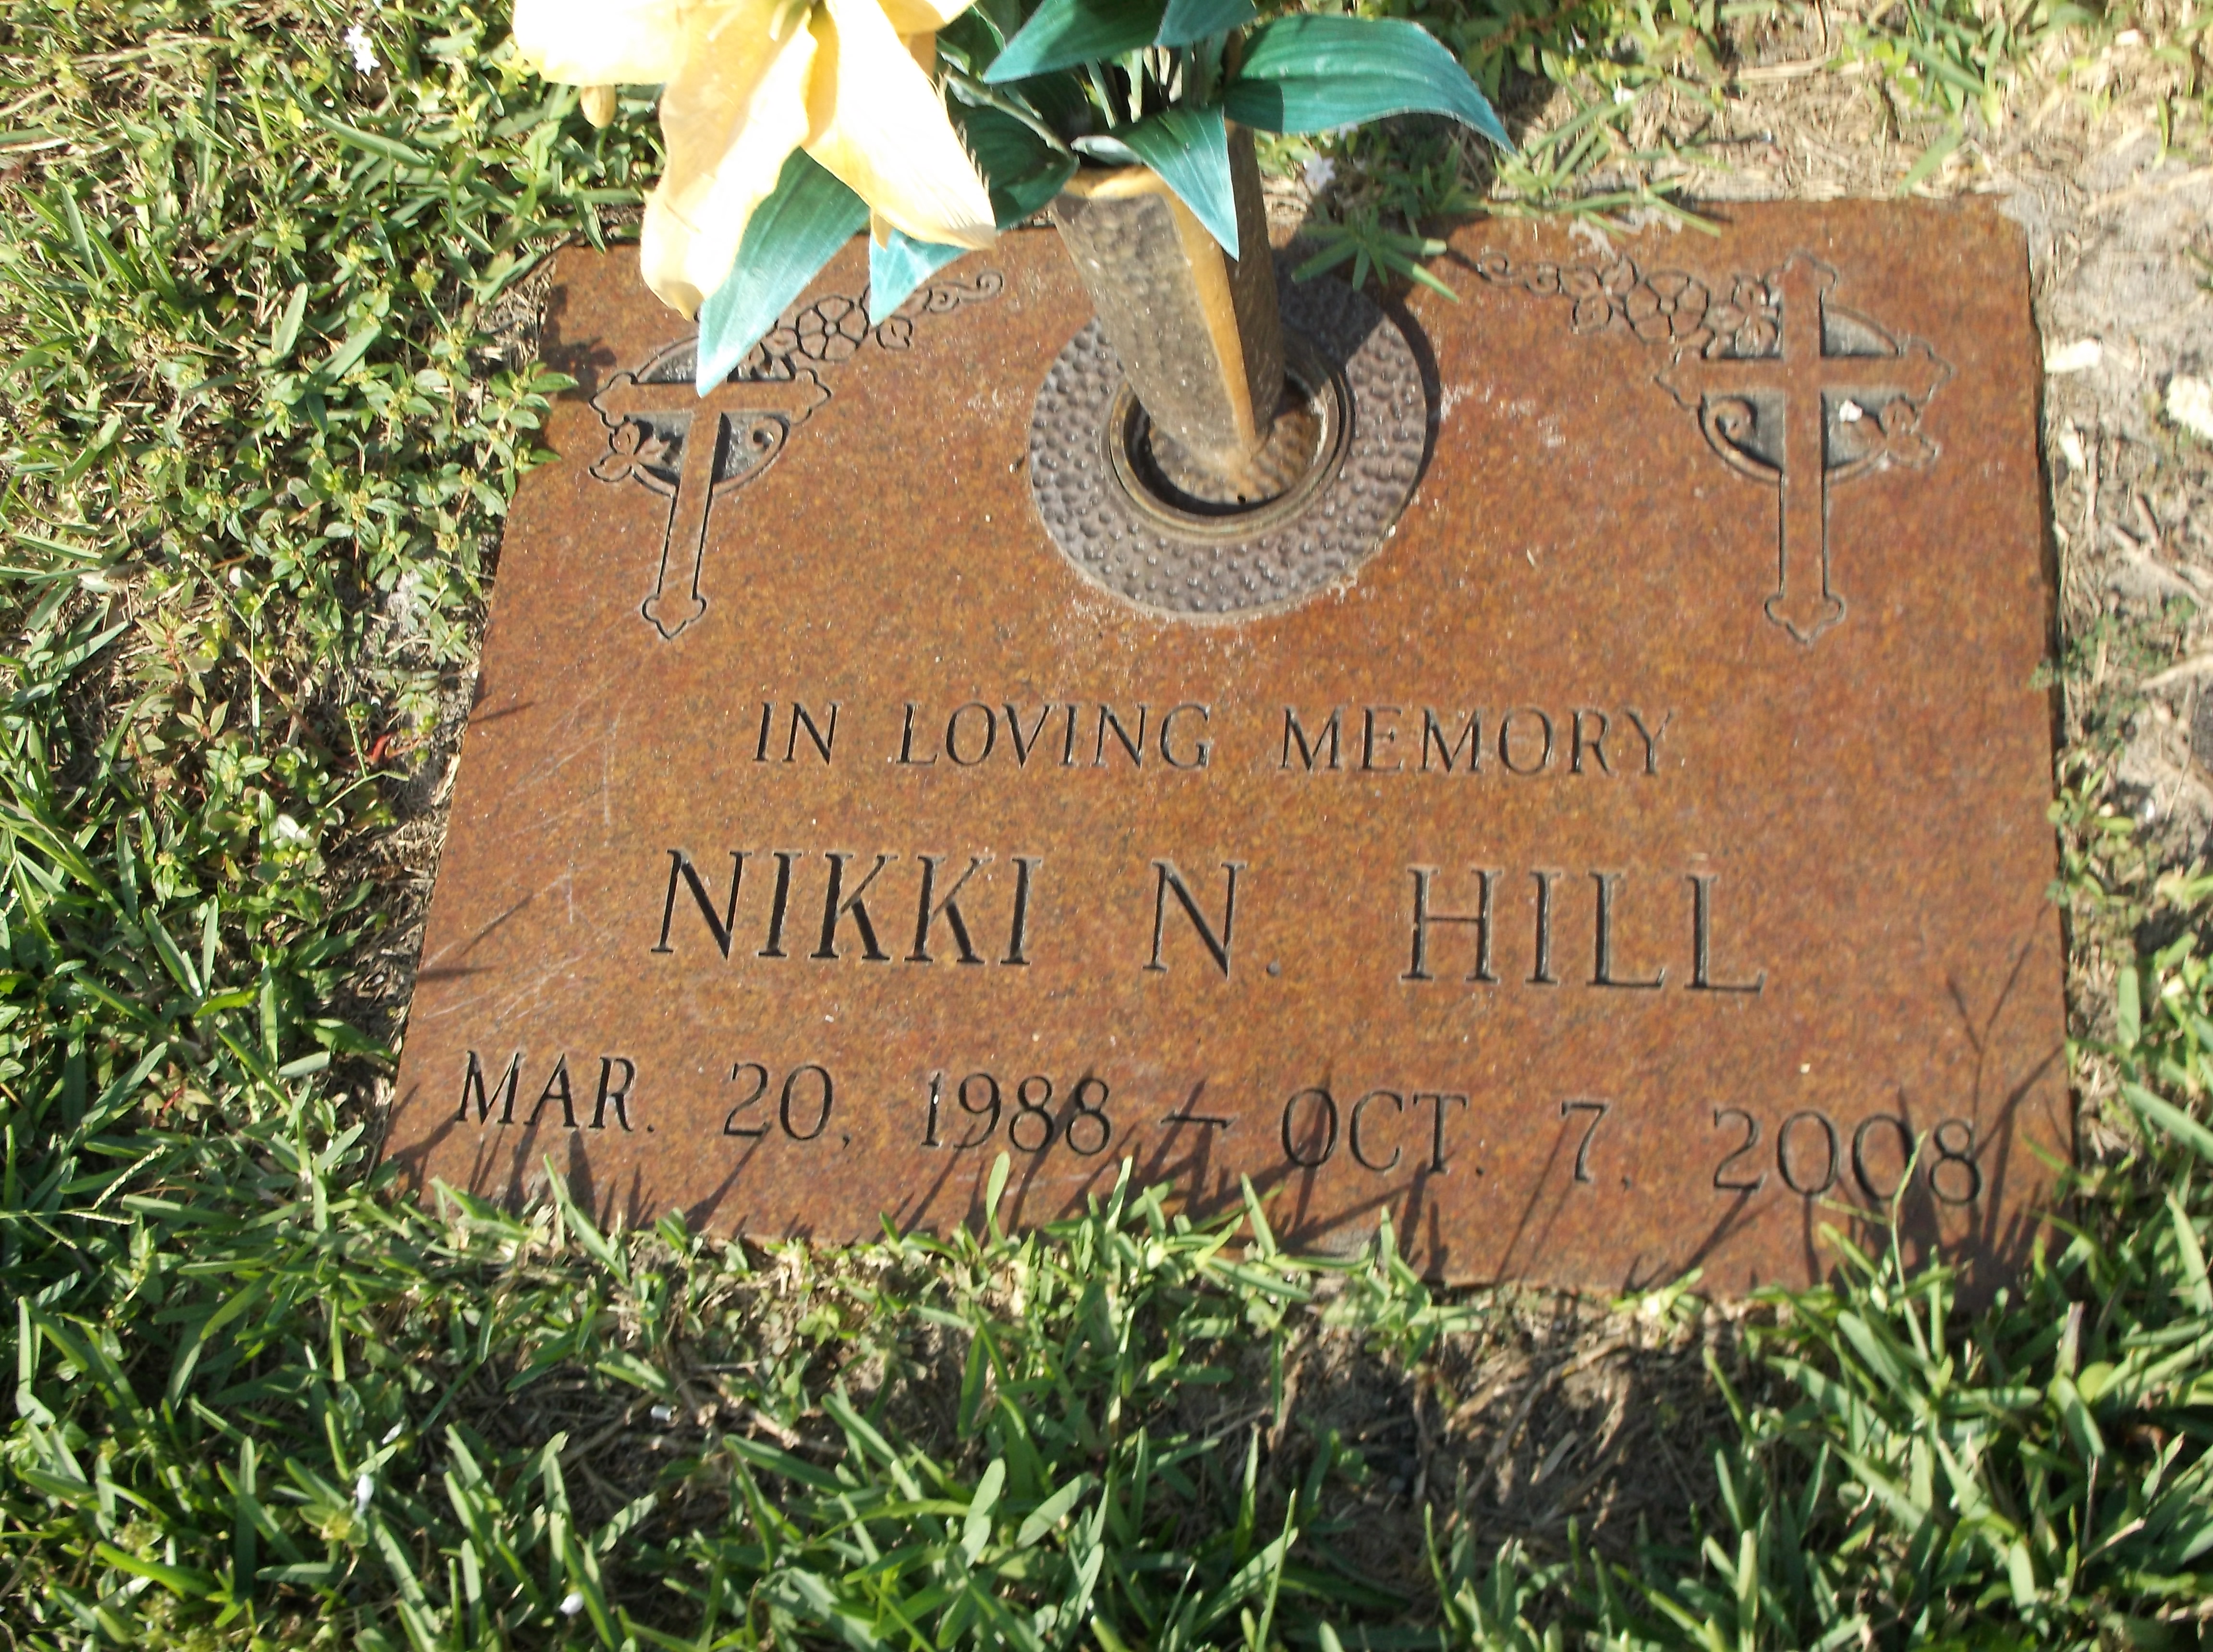 Nikki N Hill